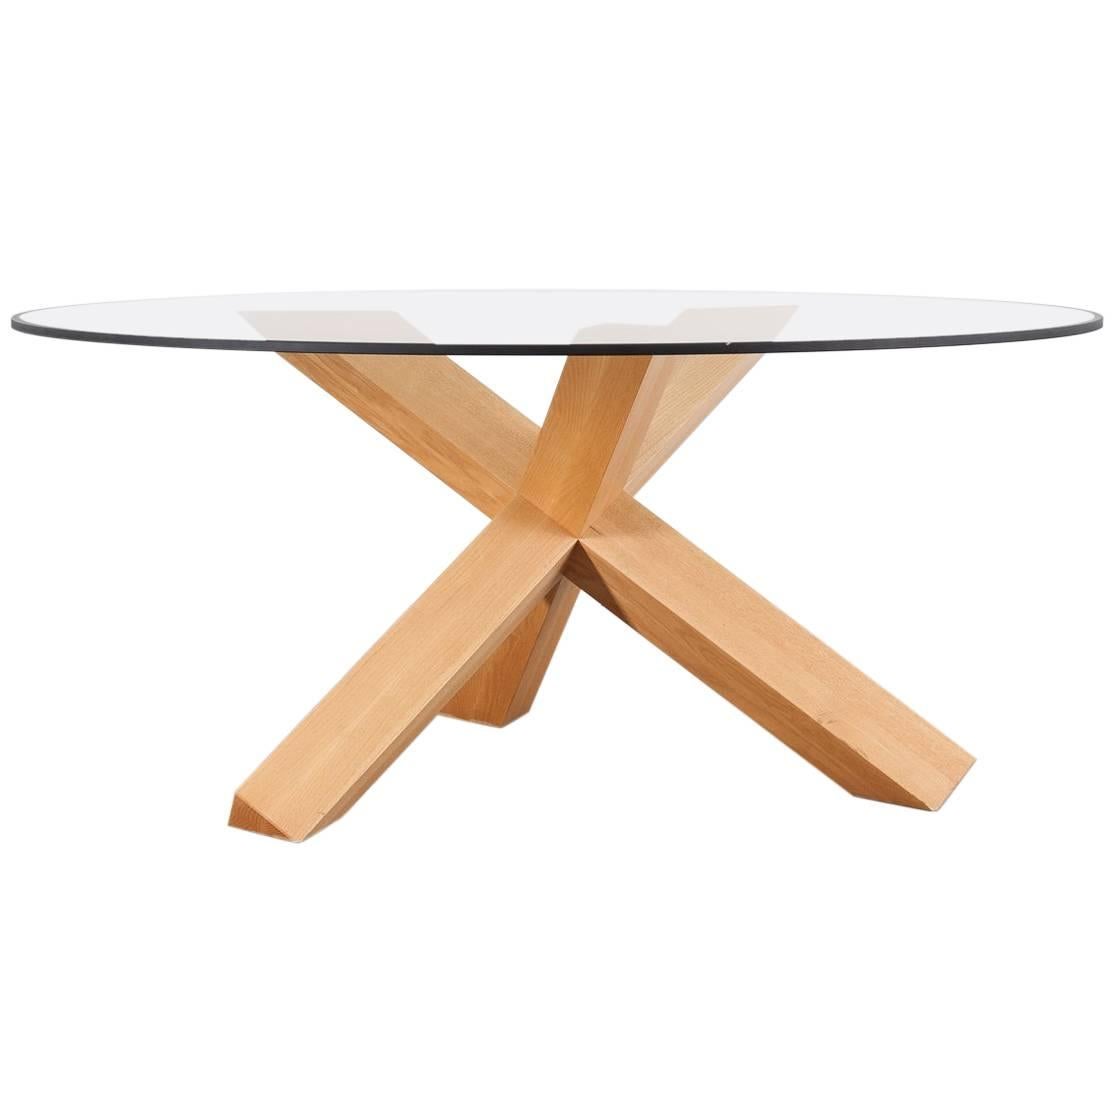 La Rotonda Dining Table by Mario Bellini for Cassina